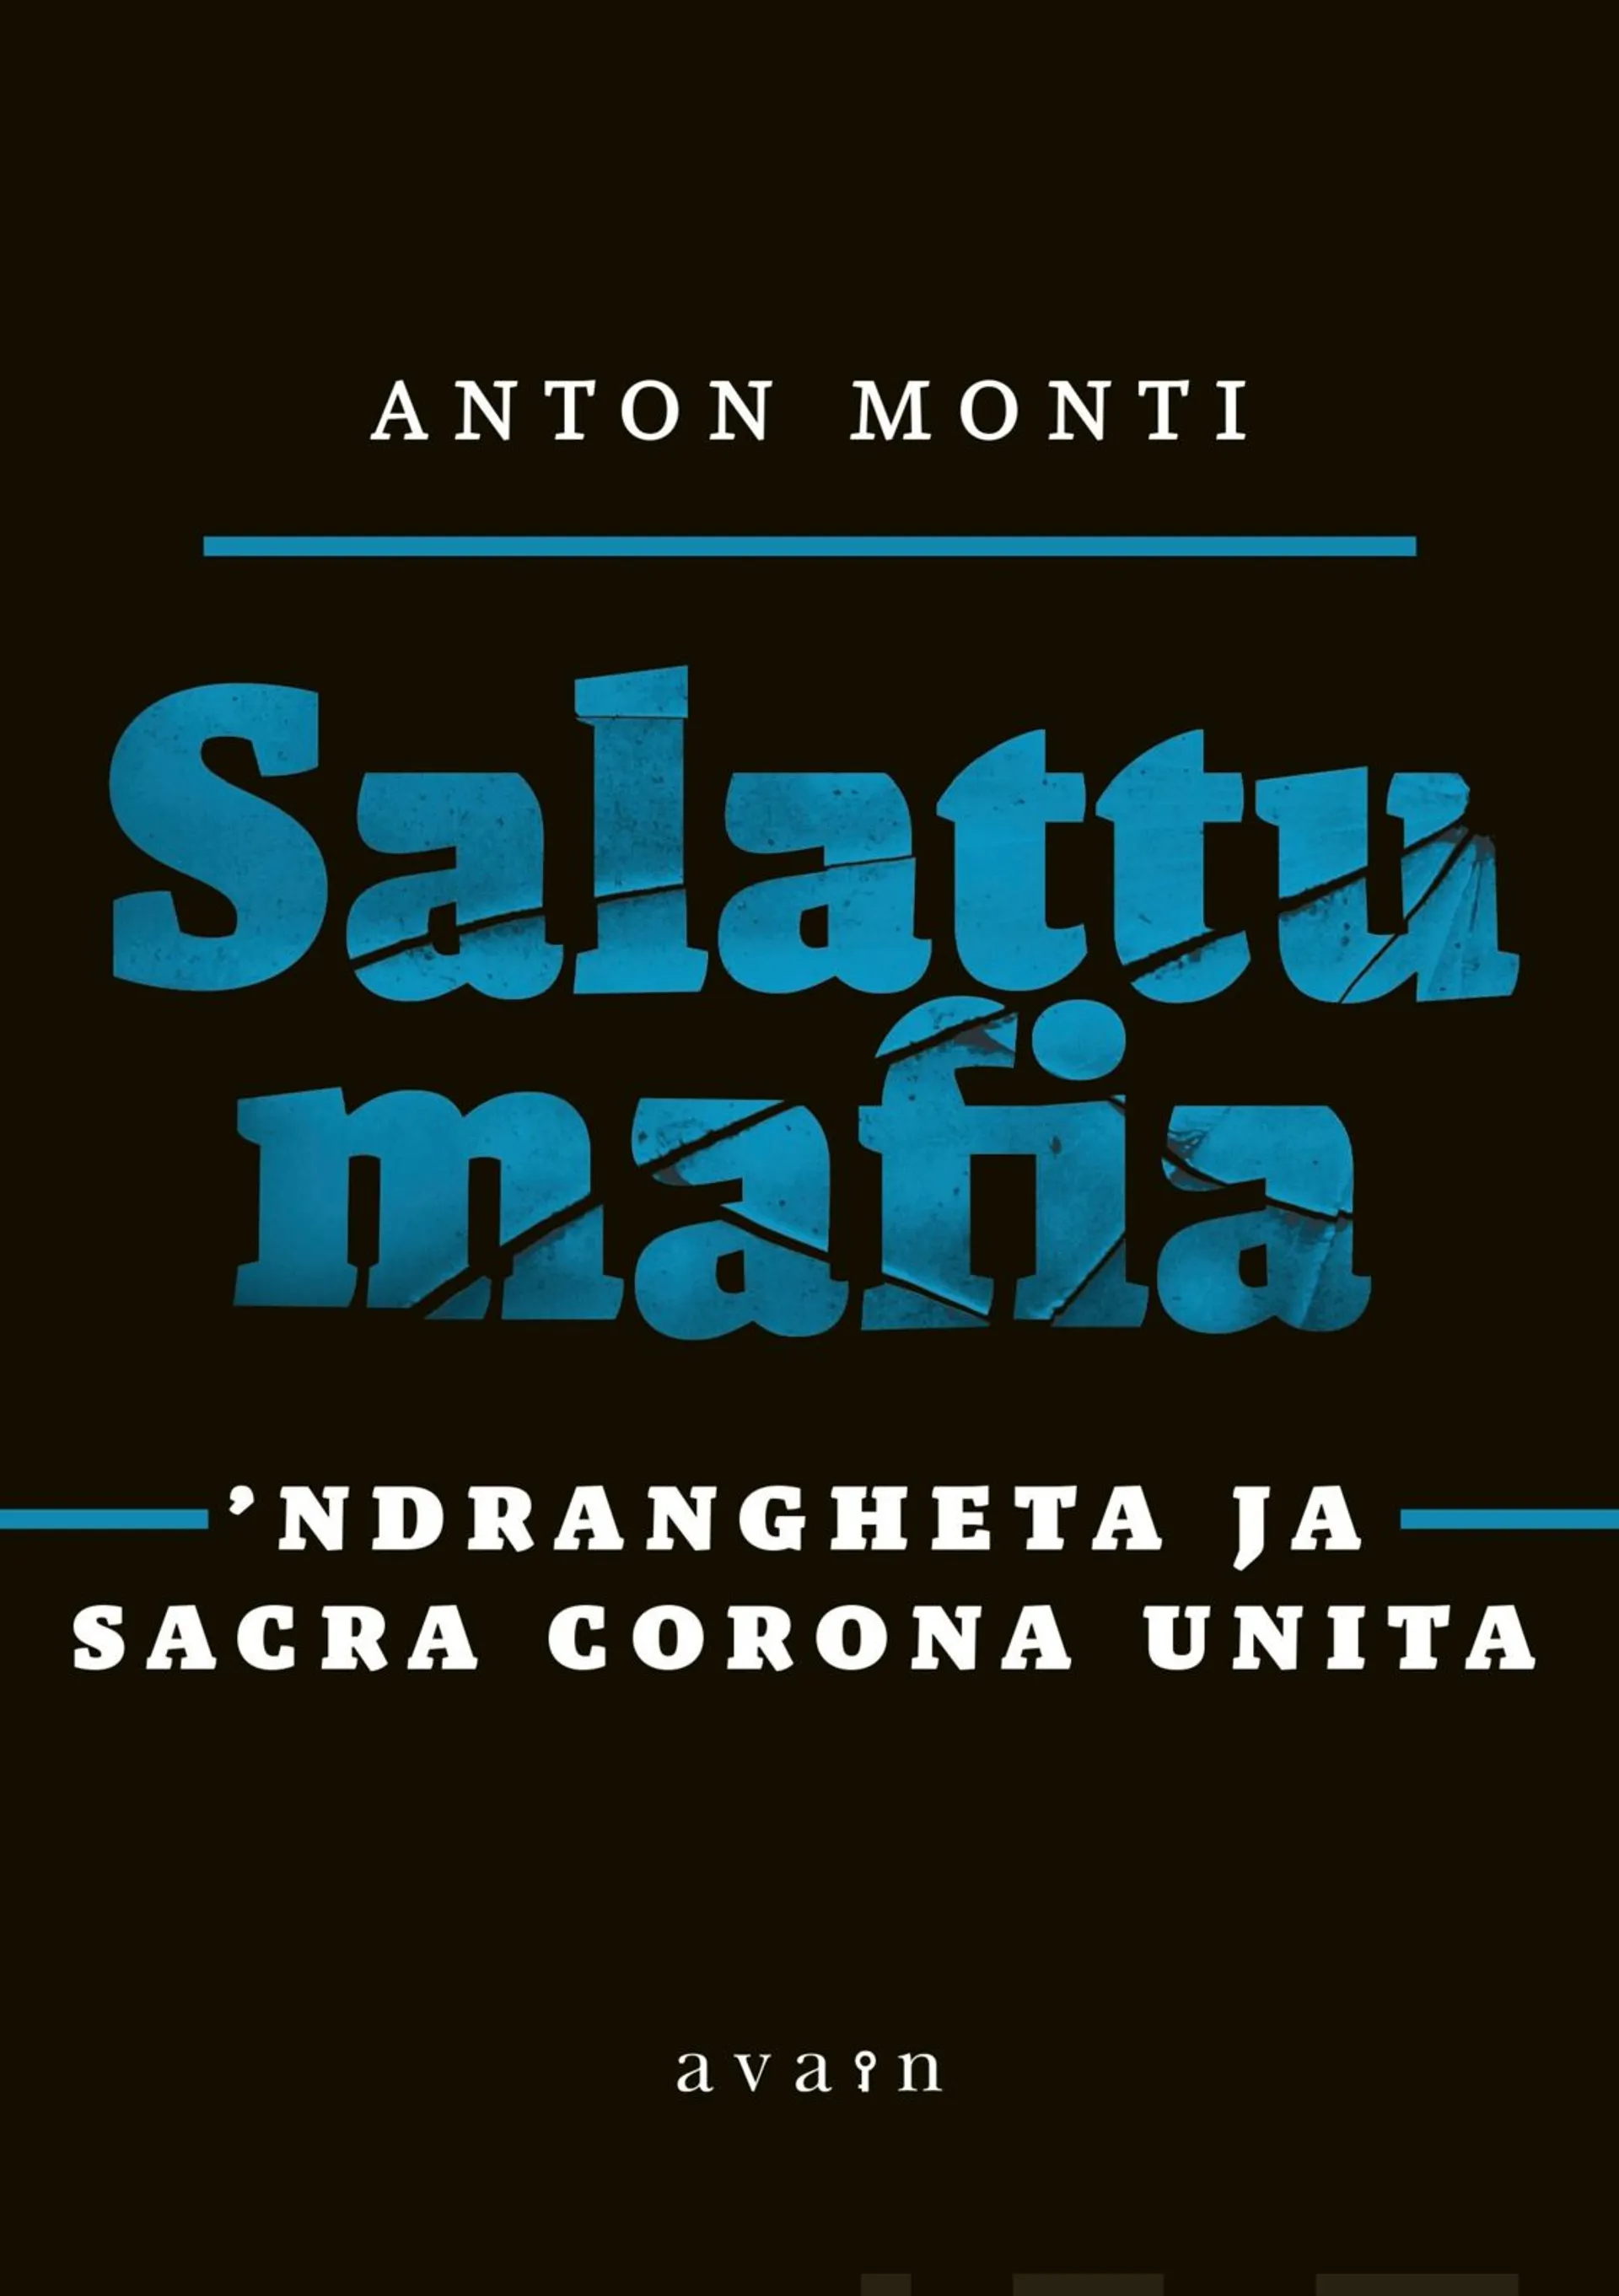 Monti, Salattu mafia - 'Ndrangheta ja Sacra Corona Unita